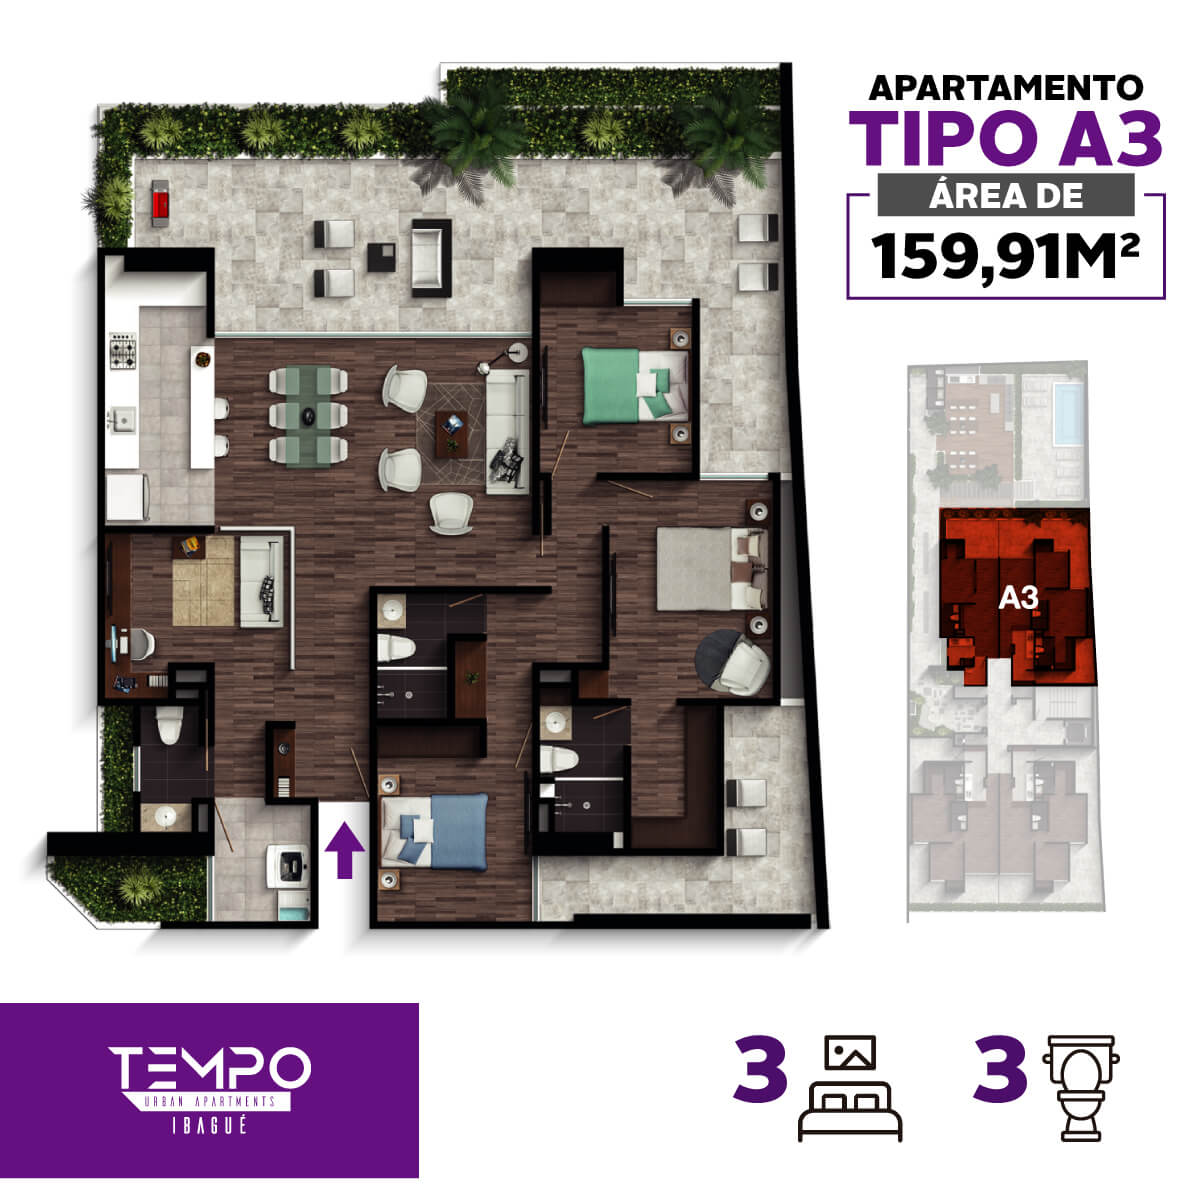 Tempo-urban-apartments-apartamento-tipo-A3